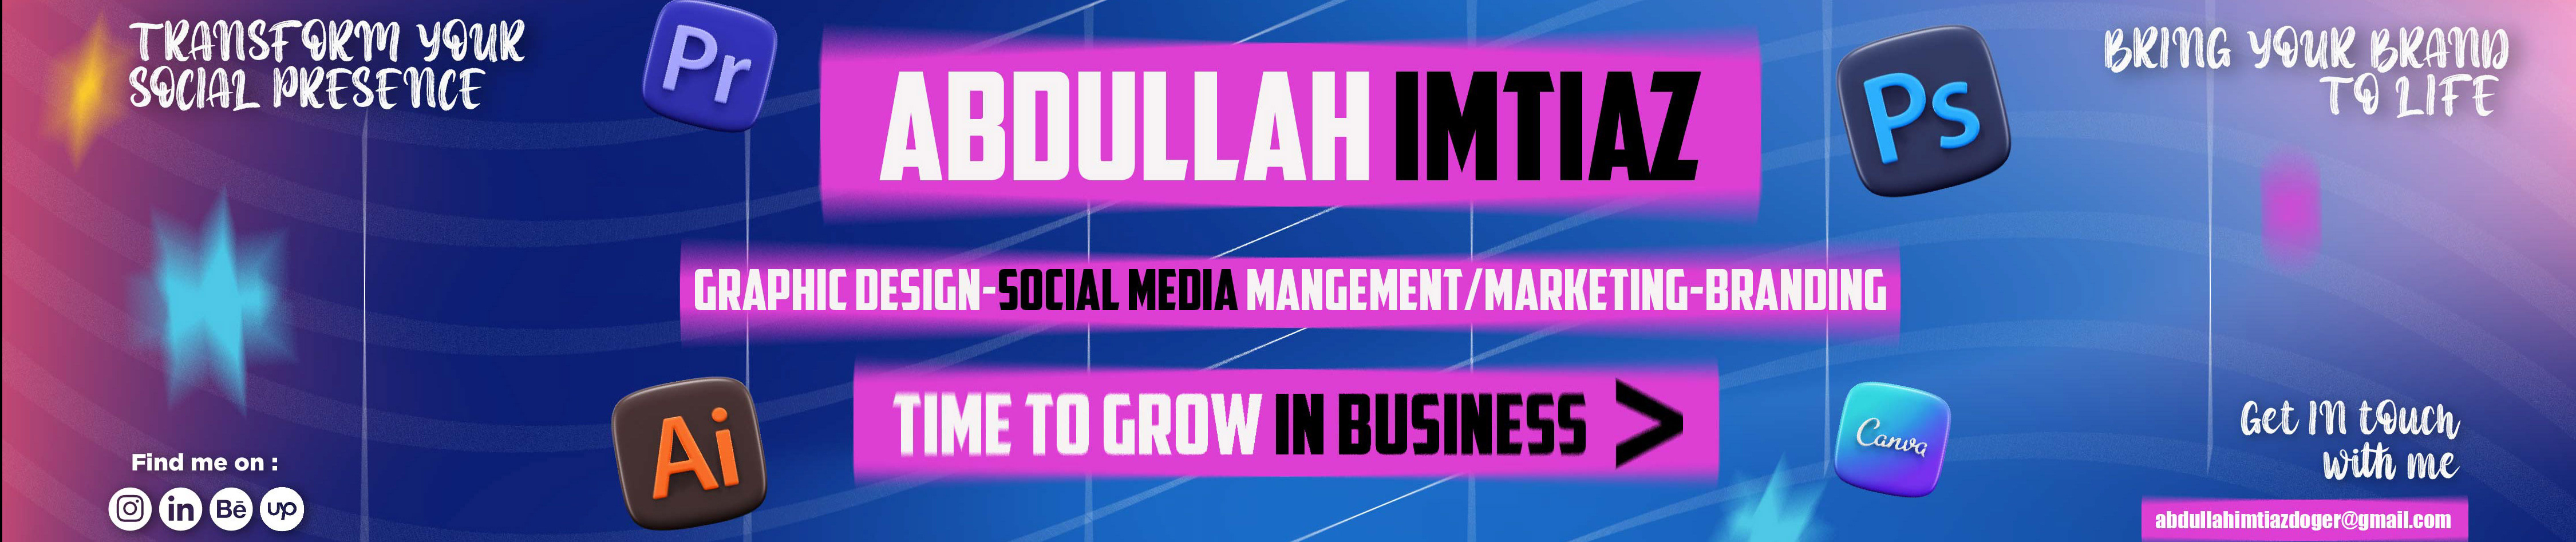 Abdullah Imtiaz's profile banner